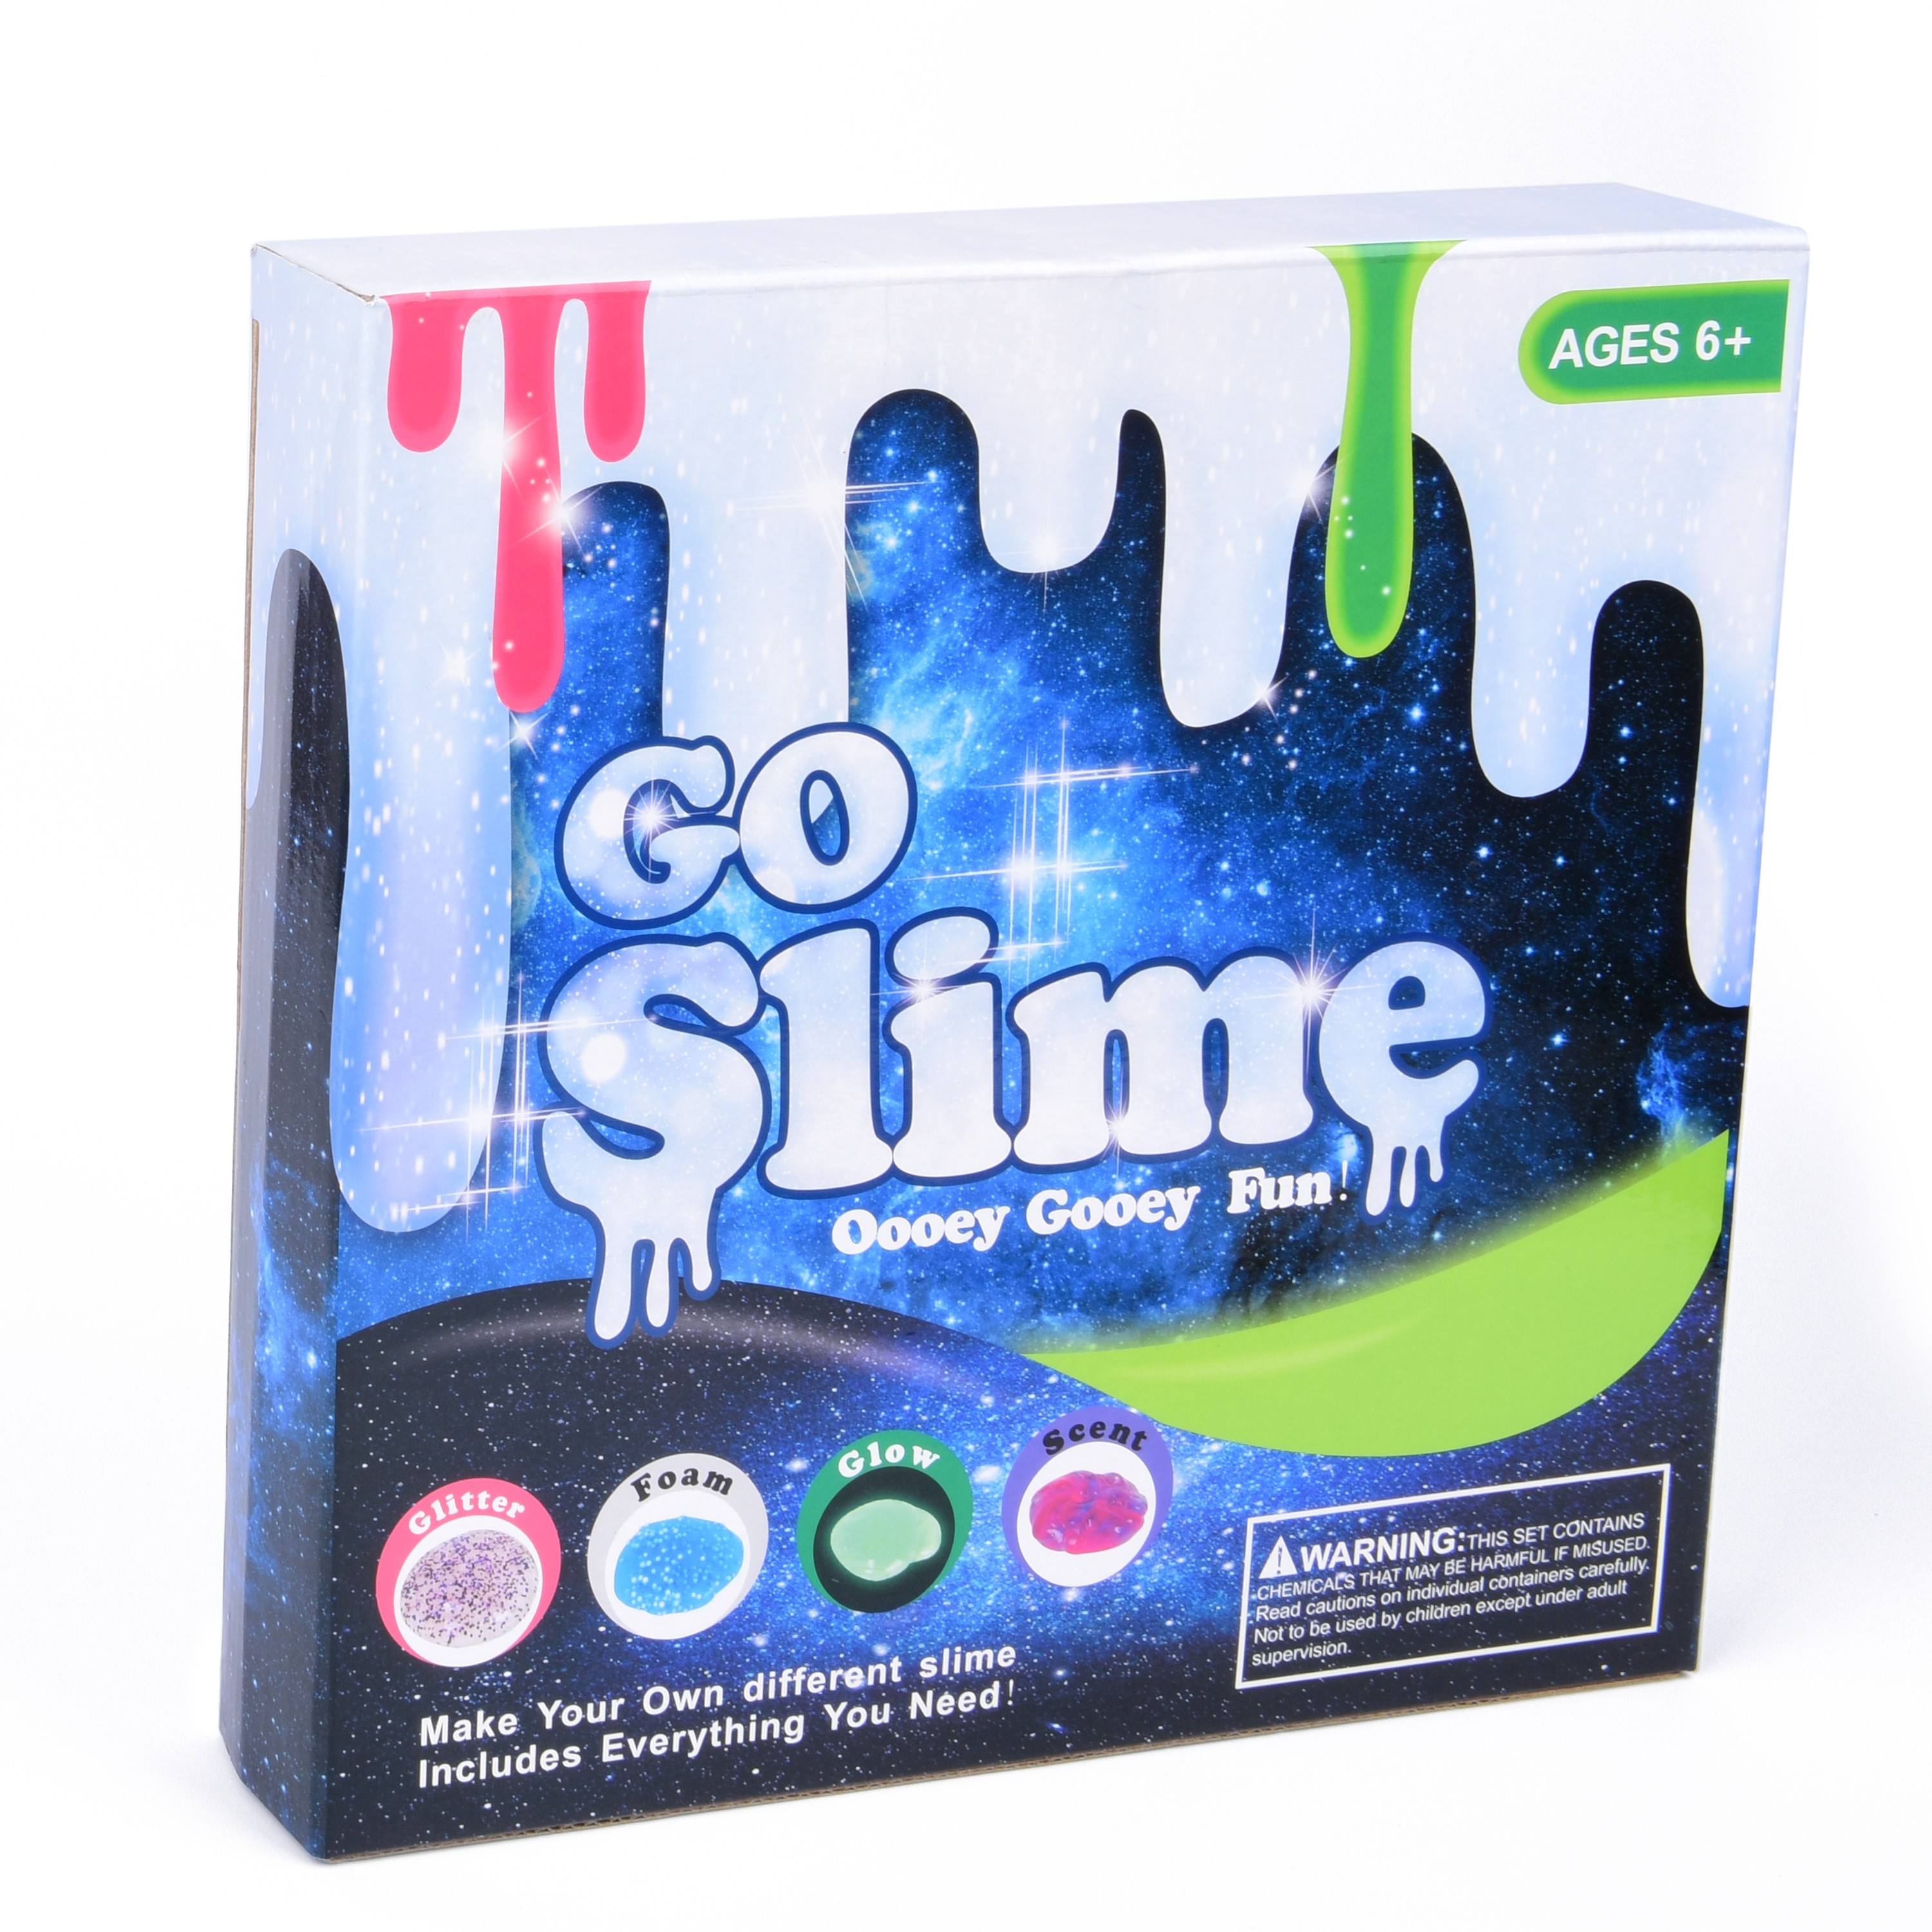 DIY Slime Kit for Girls Boys - Ultimate Glow in The Dark Glitter Slime Making